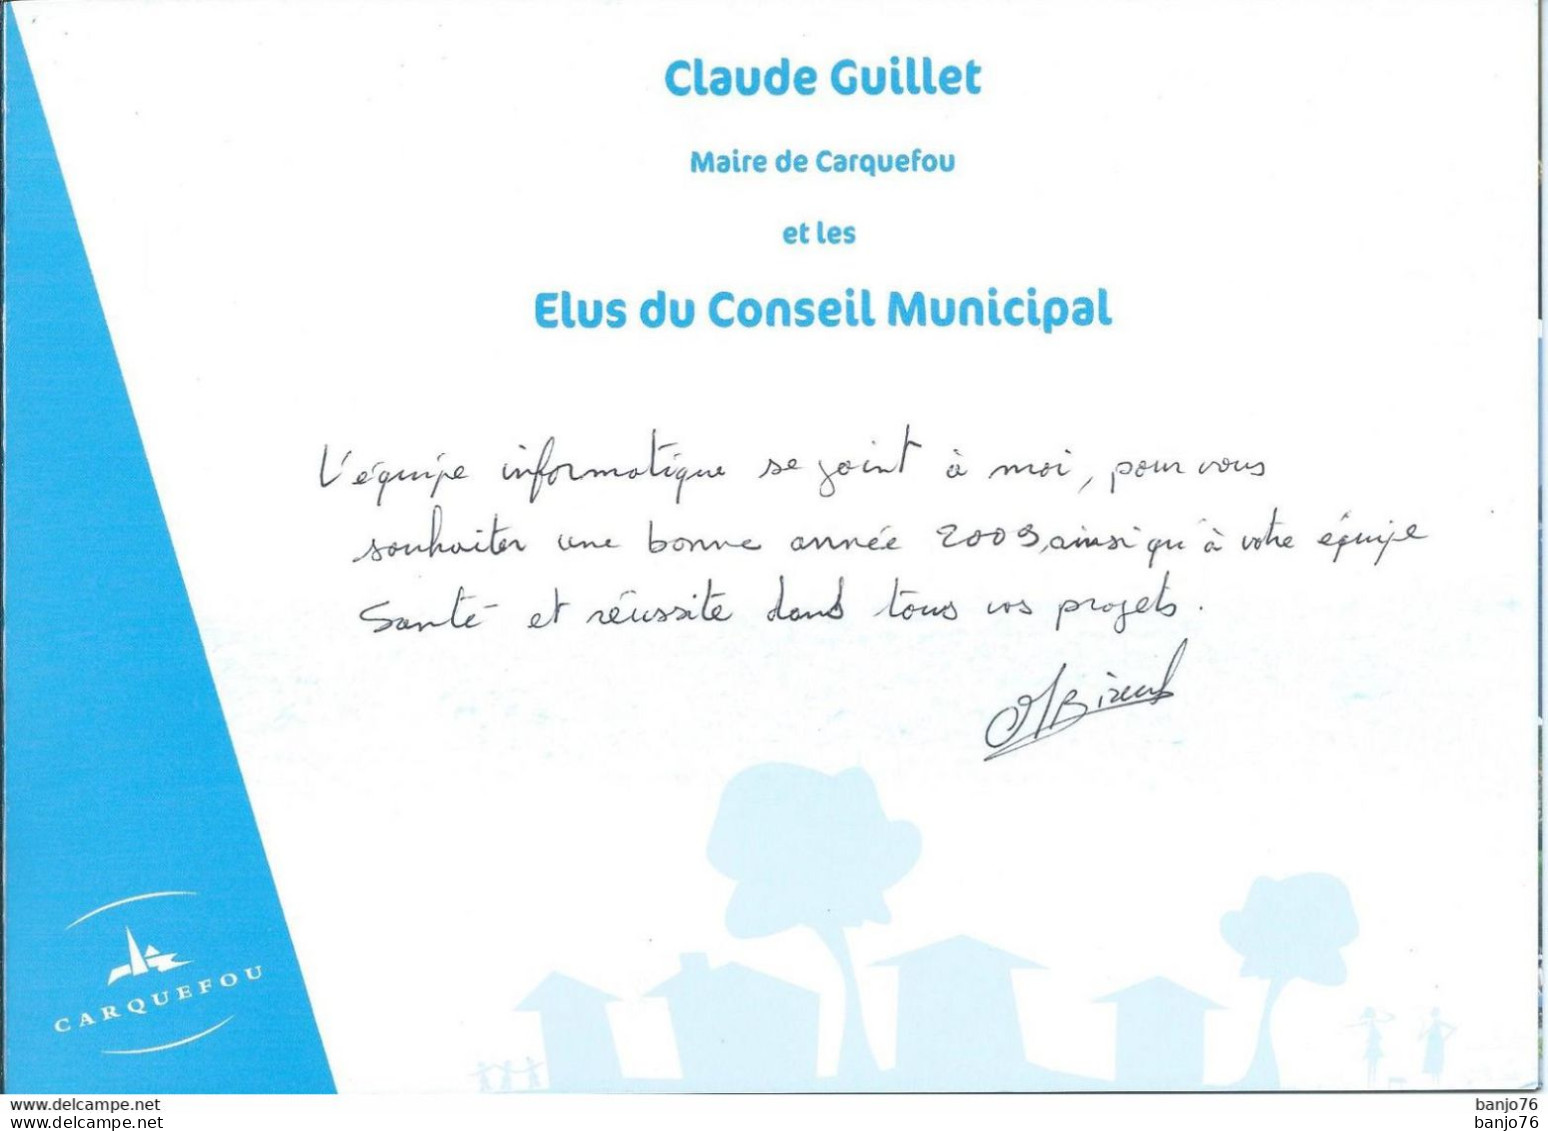 Carquefou (44) - Carte De Vœux De La Mairie 2009 - Maire Claude Guillet - Carquefou